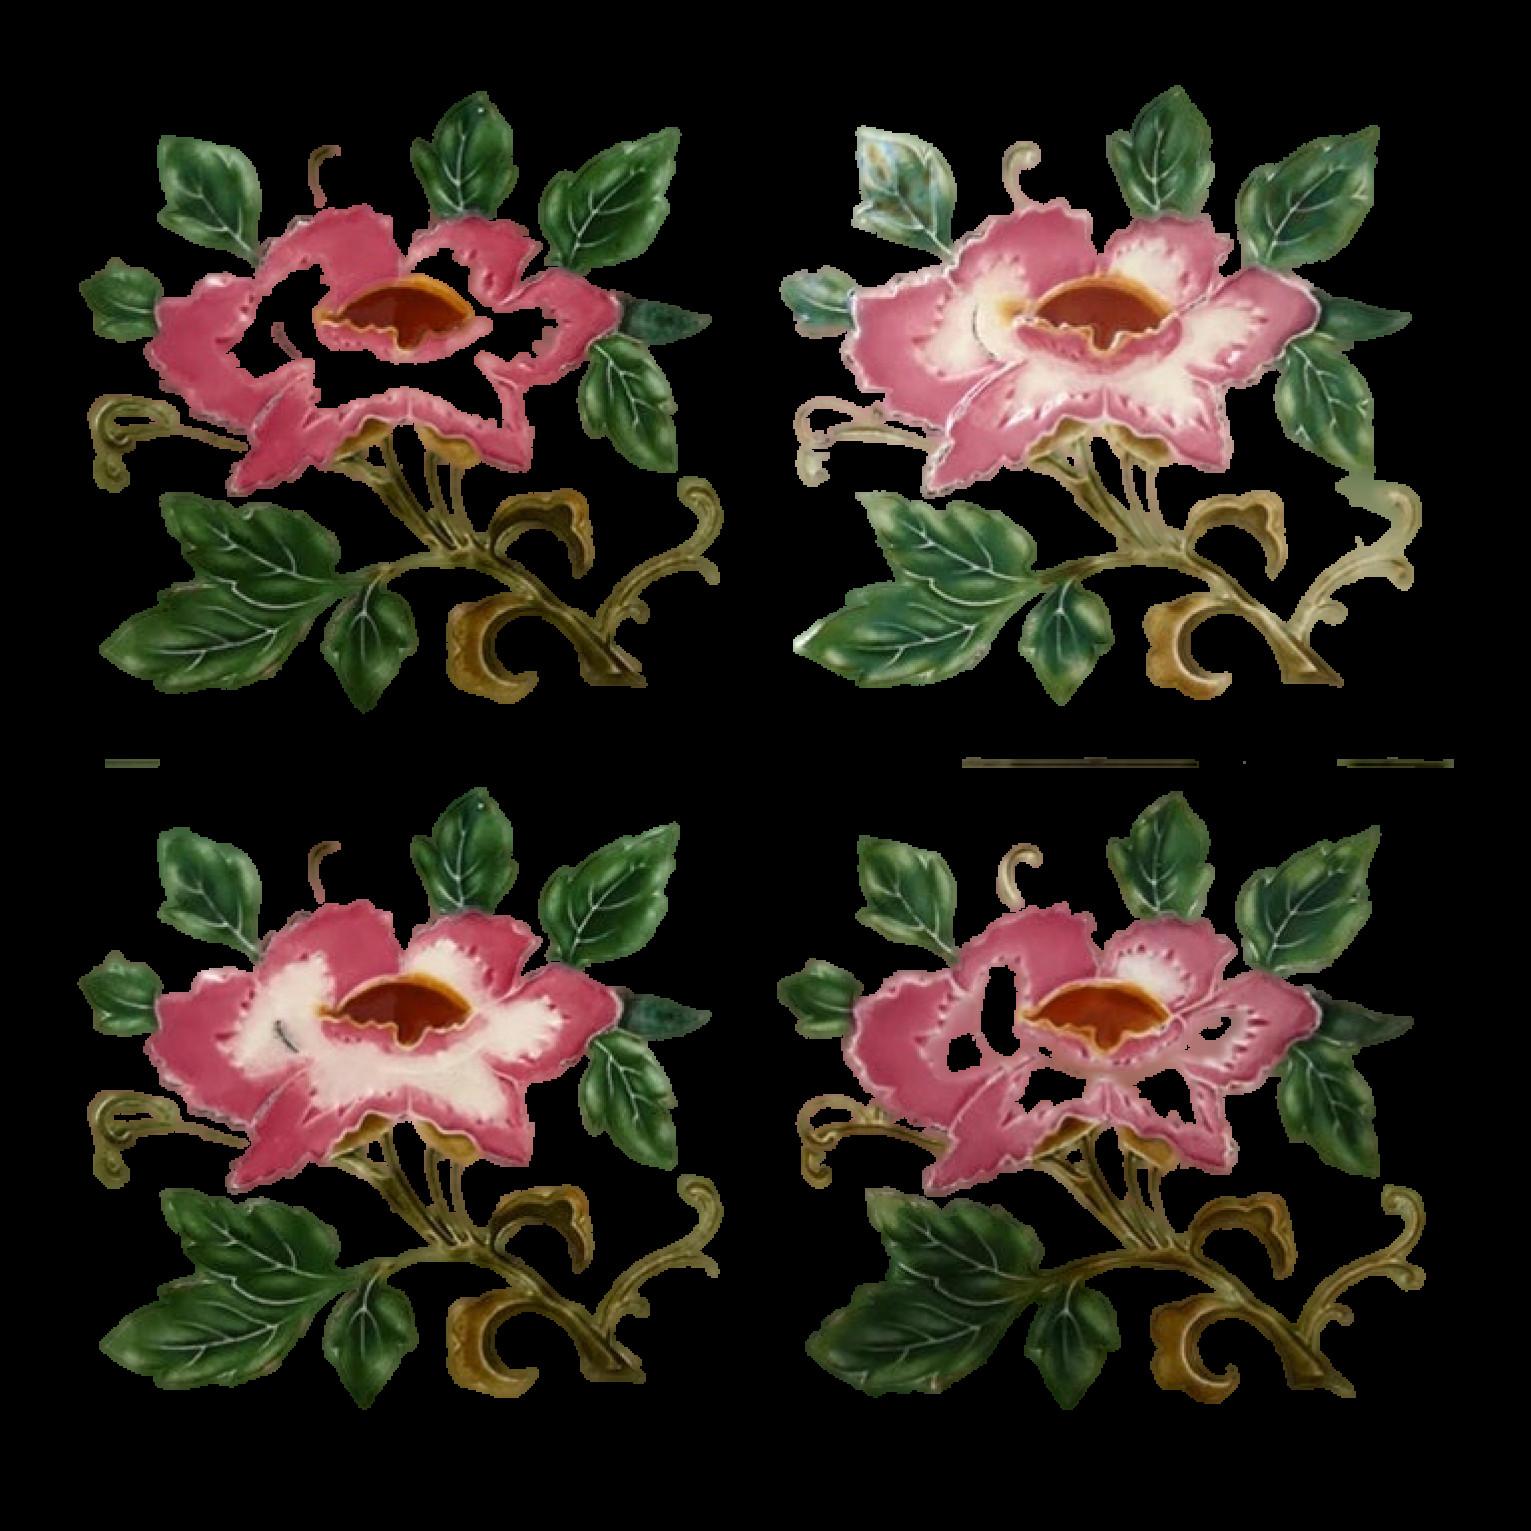 Dies ist eine erstaunliche Reihe von antiken Art Nouveau handgefertigten Fliesen mit einem Bild von rosa Rose in Relief auf einem weichen gelben Hintergrund. Diese Kacheln können auf Staffeleien ausgestellt, gerahmt oder in ein individuelles